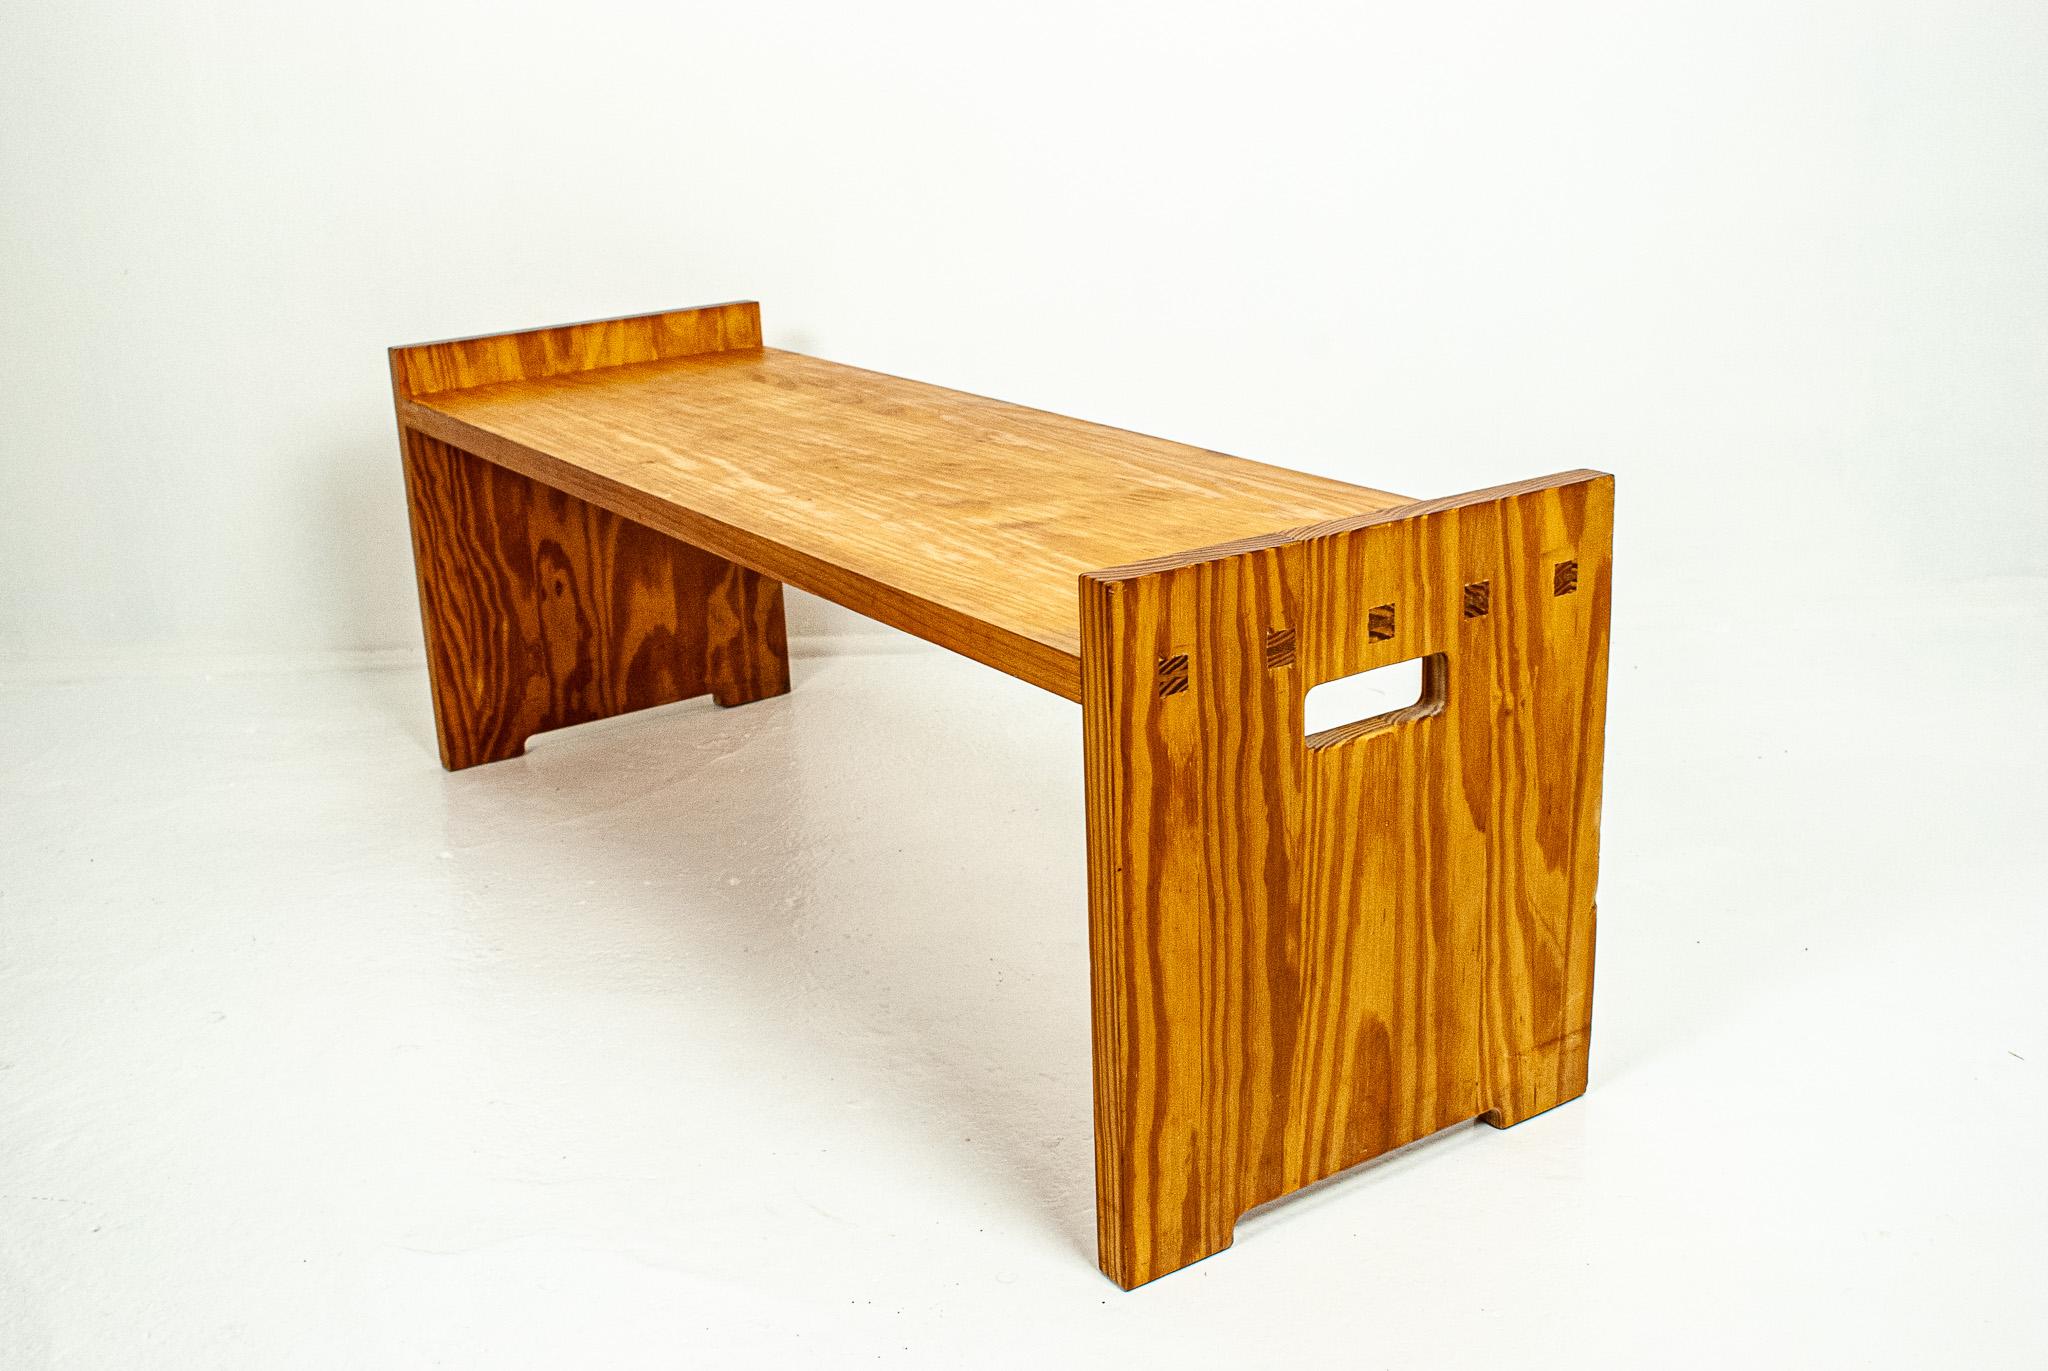 Pine bench, model 